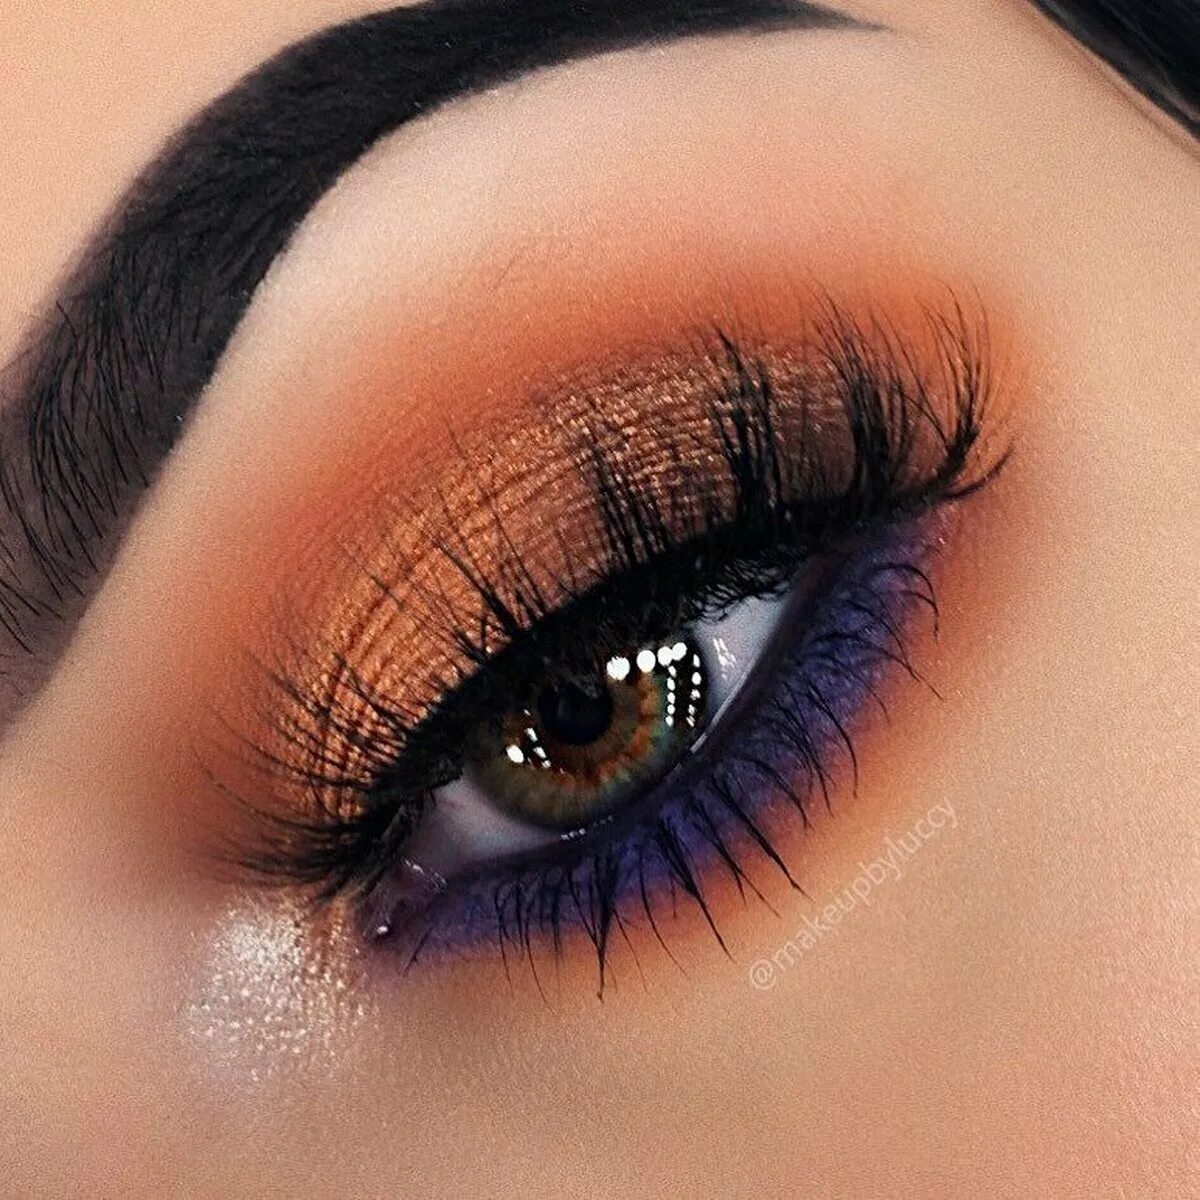 Макияж для карих глаз. Красивый макияж для карих глаз. Макияж с оранжевыми тенями. Оранжевый макияж для карих глаз.